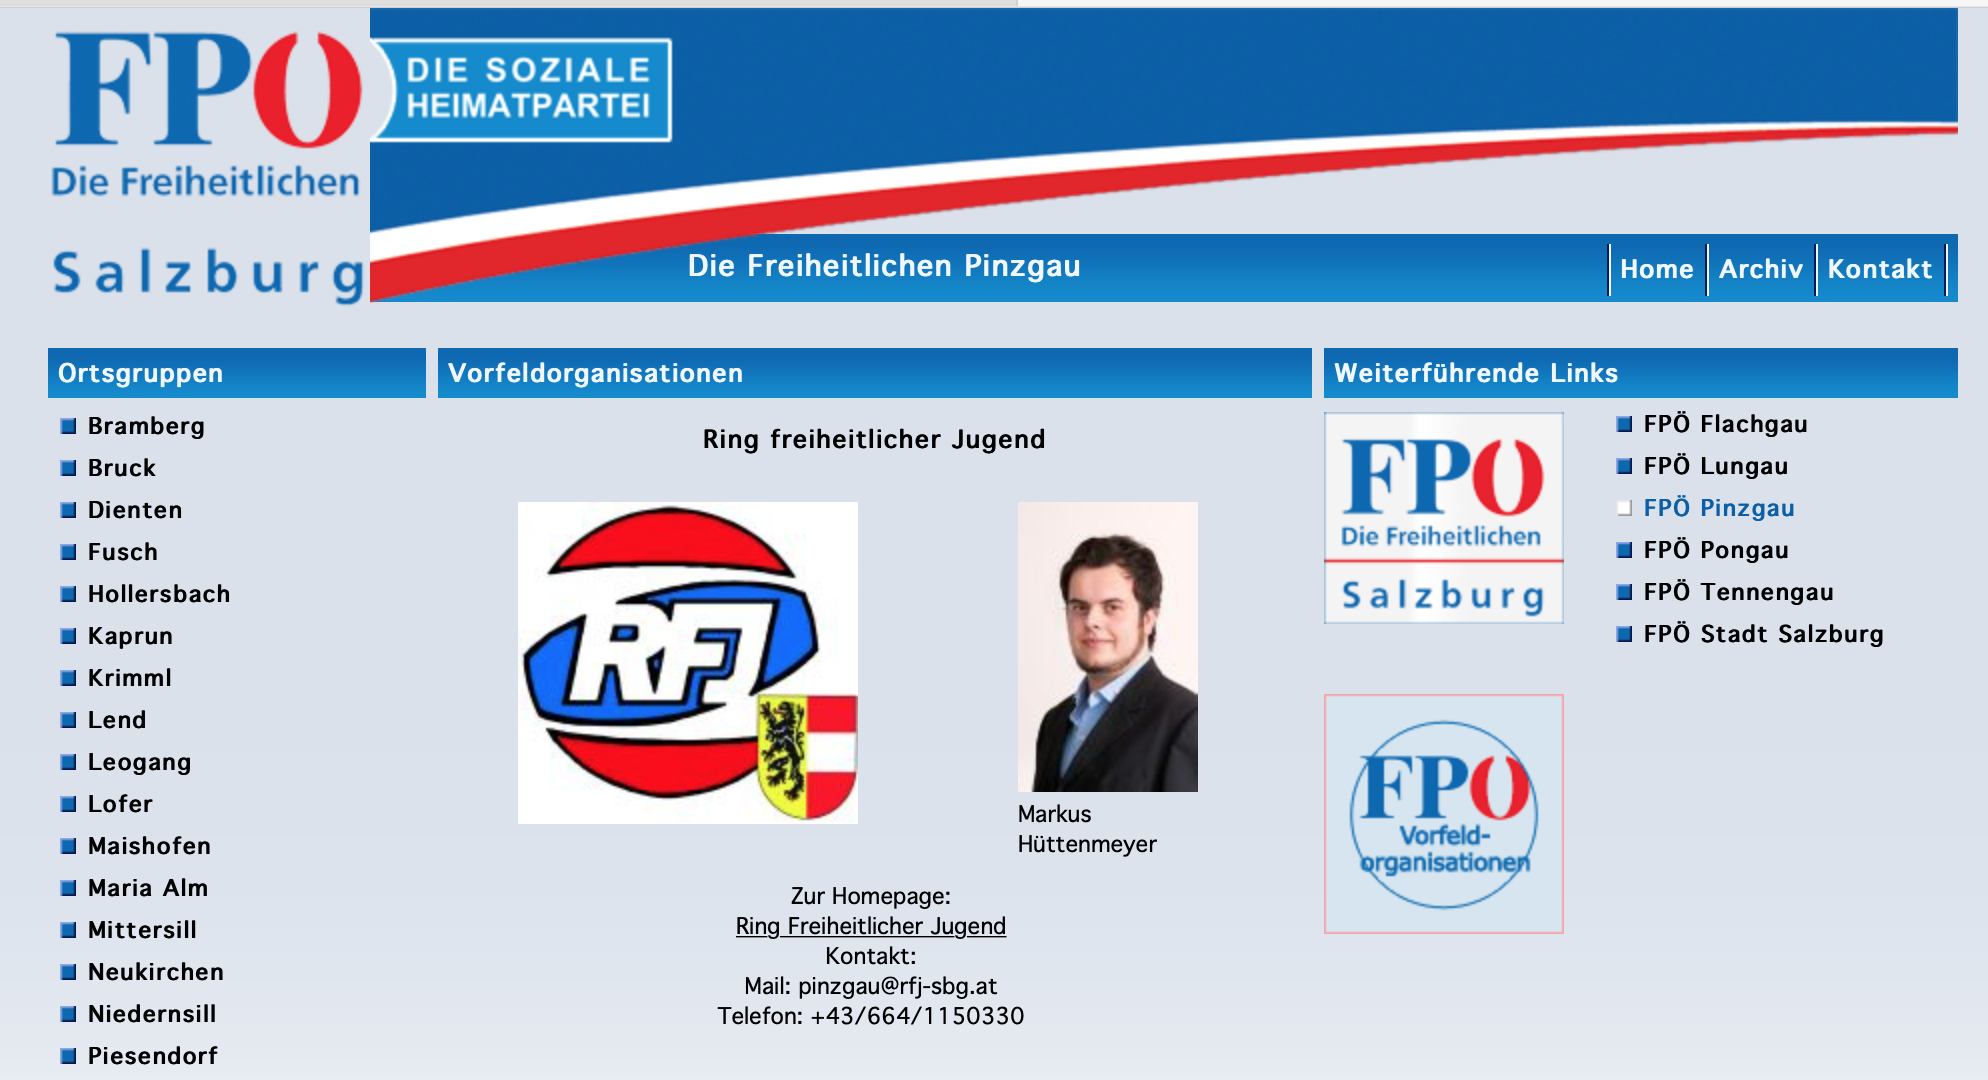 Hüttenmeyer auf der Website der FPÖ Salzburg/Pinzgau (Stand 4.1.19)